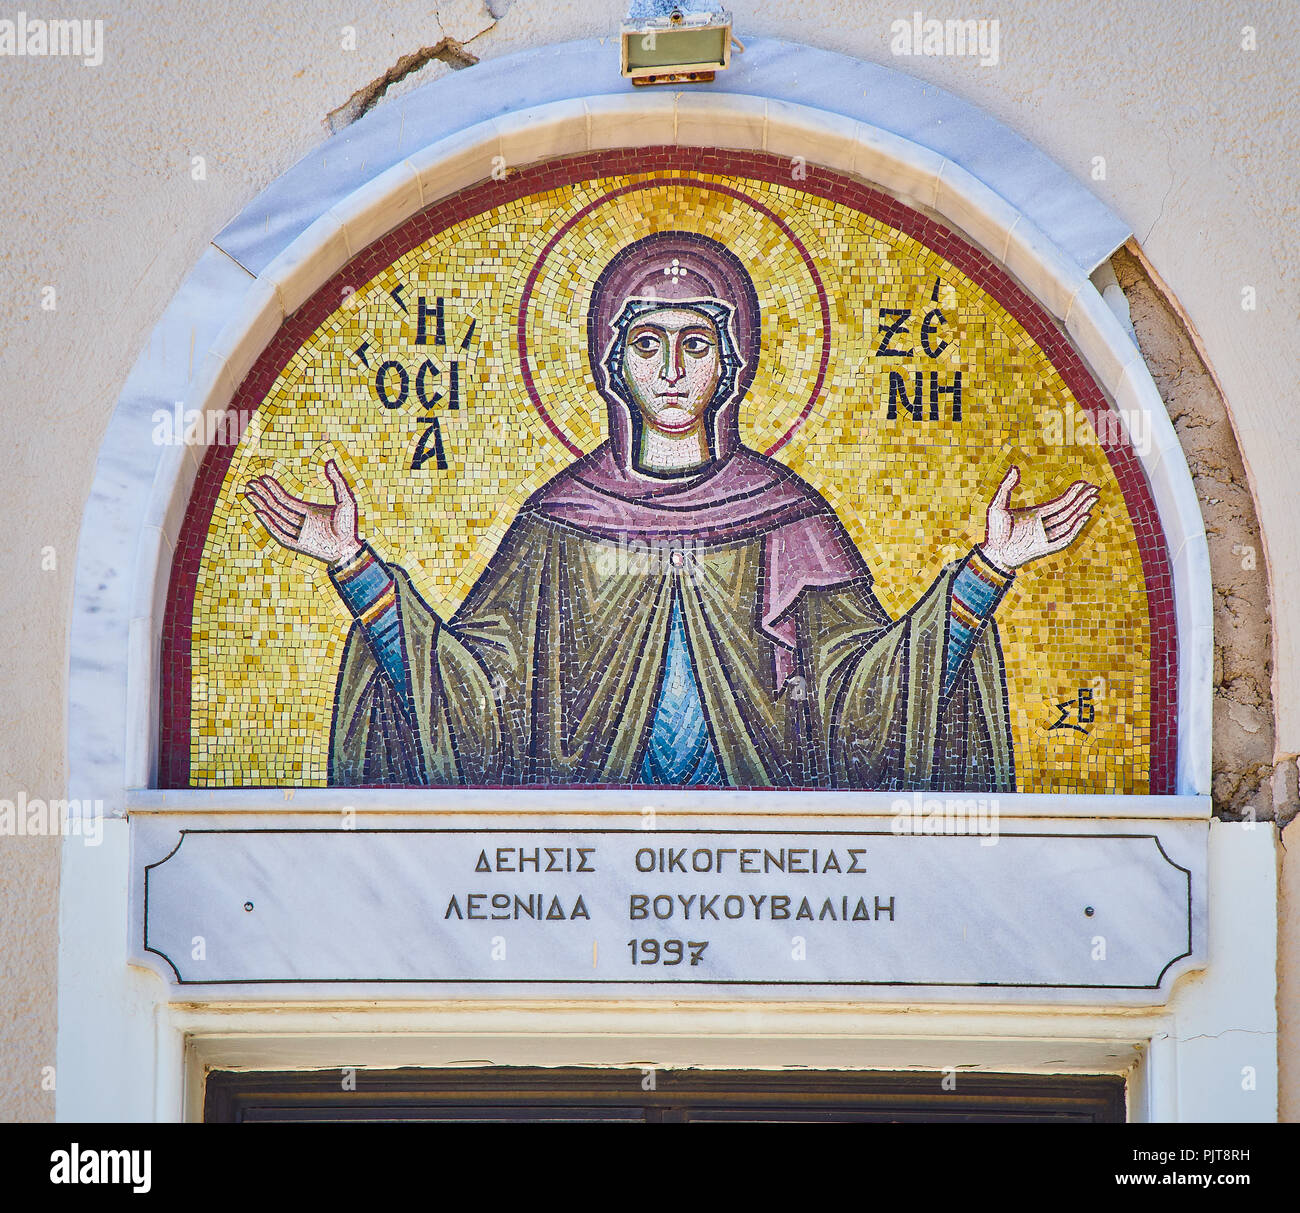 Kos, Griechenland - Juli 3, 2018. Im byzantinischen Stil Mosaiken, die Saint Paraskevi auf die seitliche Fassade der Kirche von Agia Paraskevi. Kos, Griechenland. Stockfoto